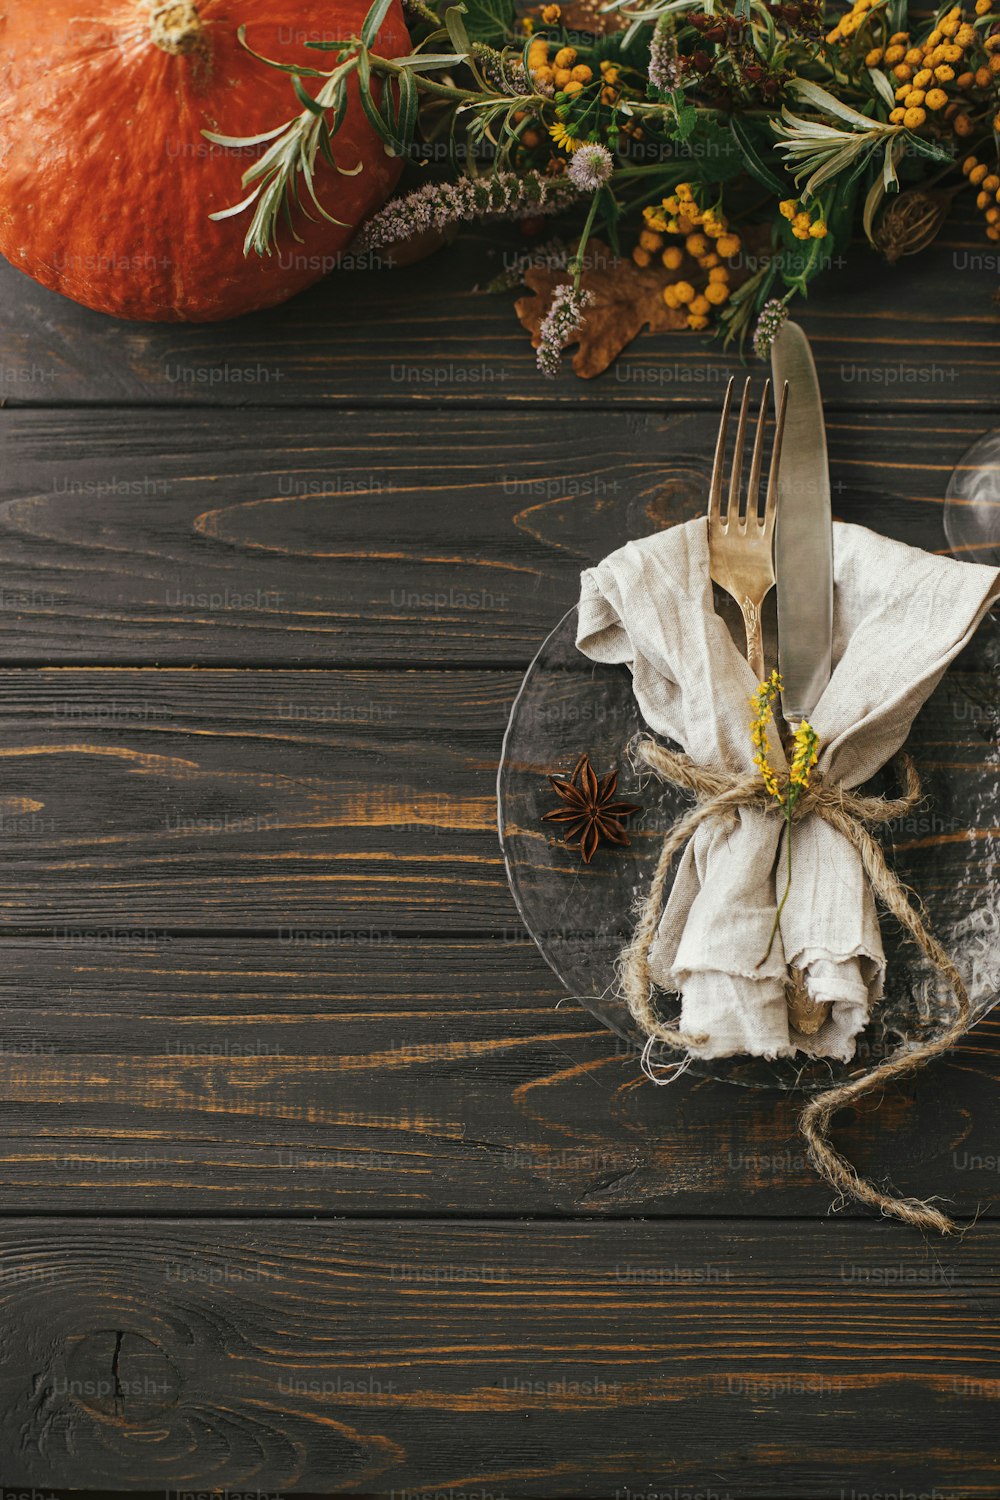 빈티지 칼 붙이, 린넨 냅킨, 호박과 가을 꽃꽂이가있는 나무 테이블에 허브가있는 현대적인 접시. 소박한 농가 결혼식. 추수 감사절 저녁 식사 테이블 설정